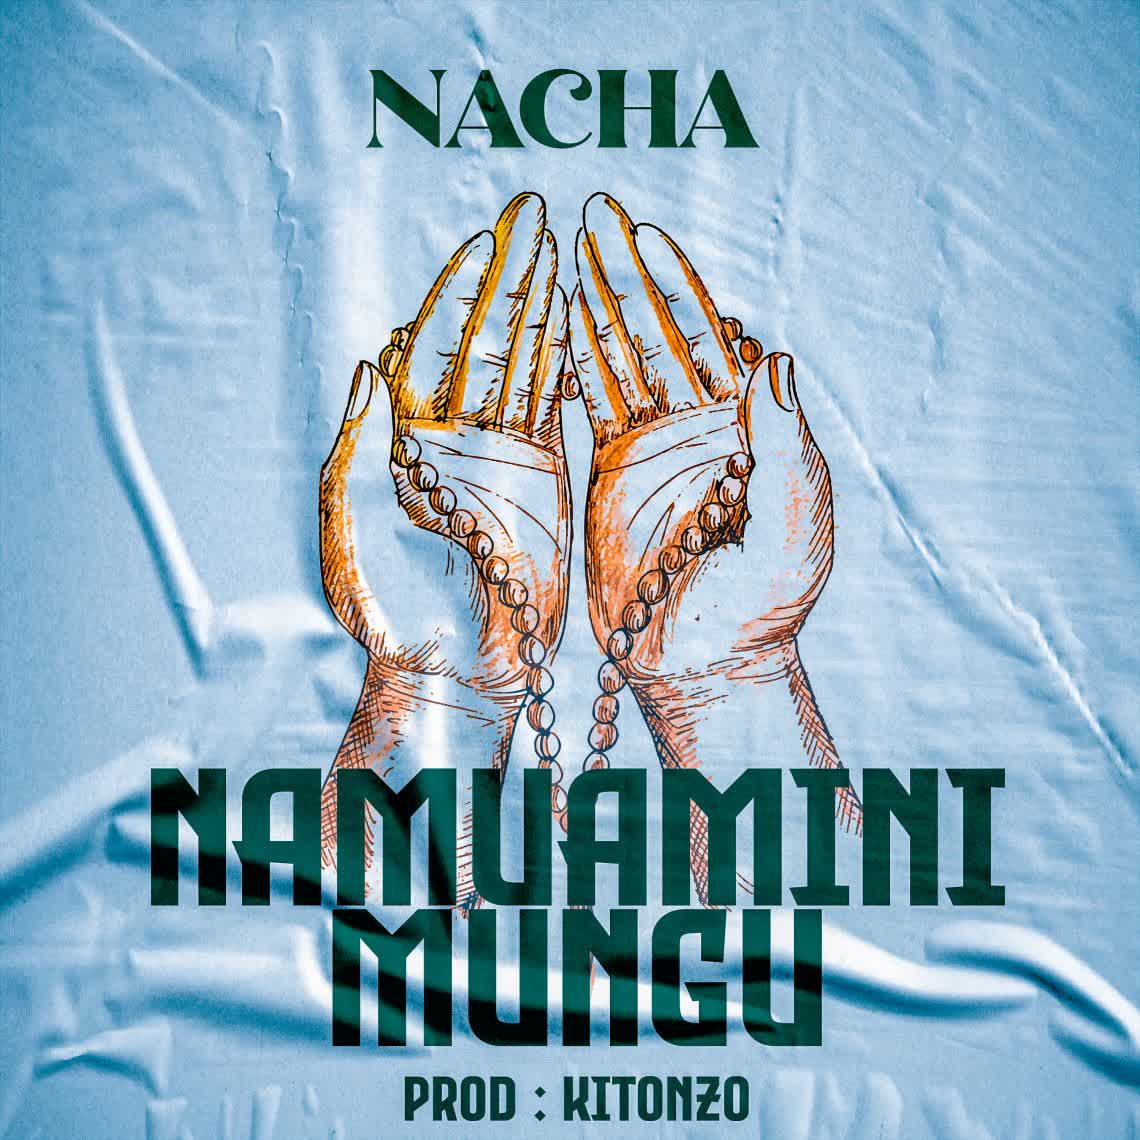 Nacha - Namuamini Mungu